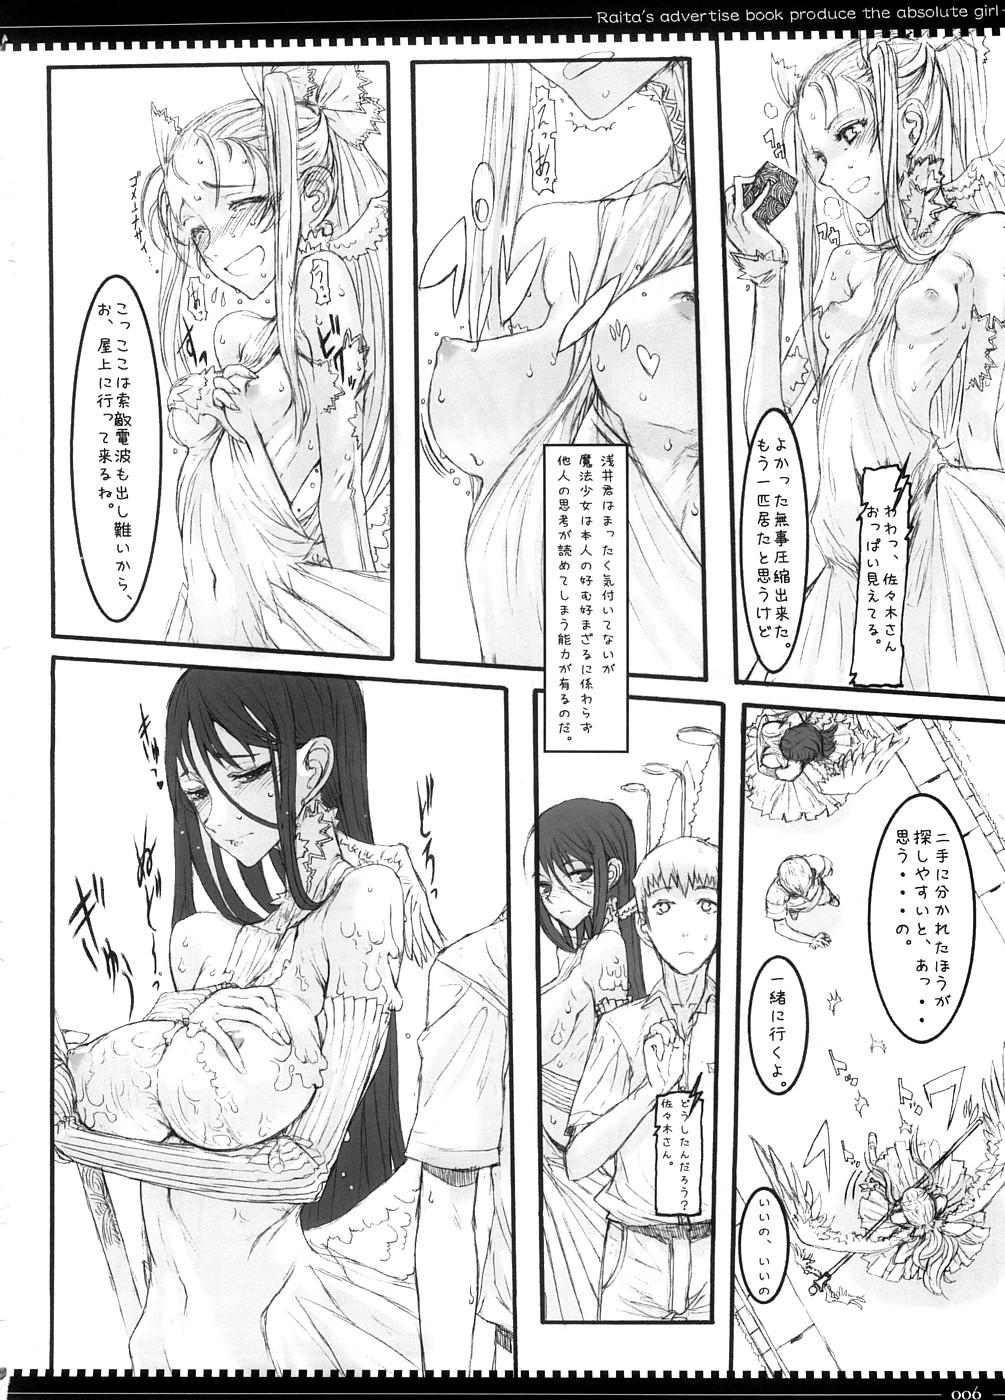 Humiliation Mahou Shoujo 3.0 - Zero no tsukaima Zettai junpaku mahou shoujo Letsdoeit - Page 5